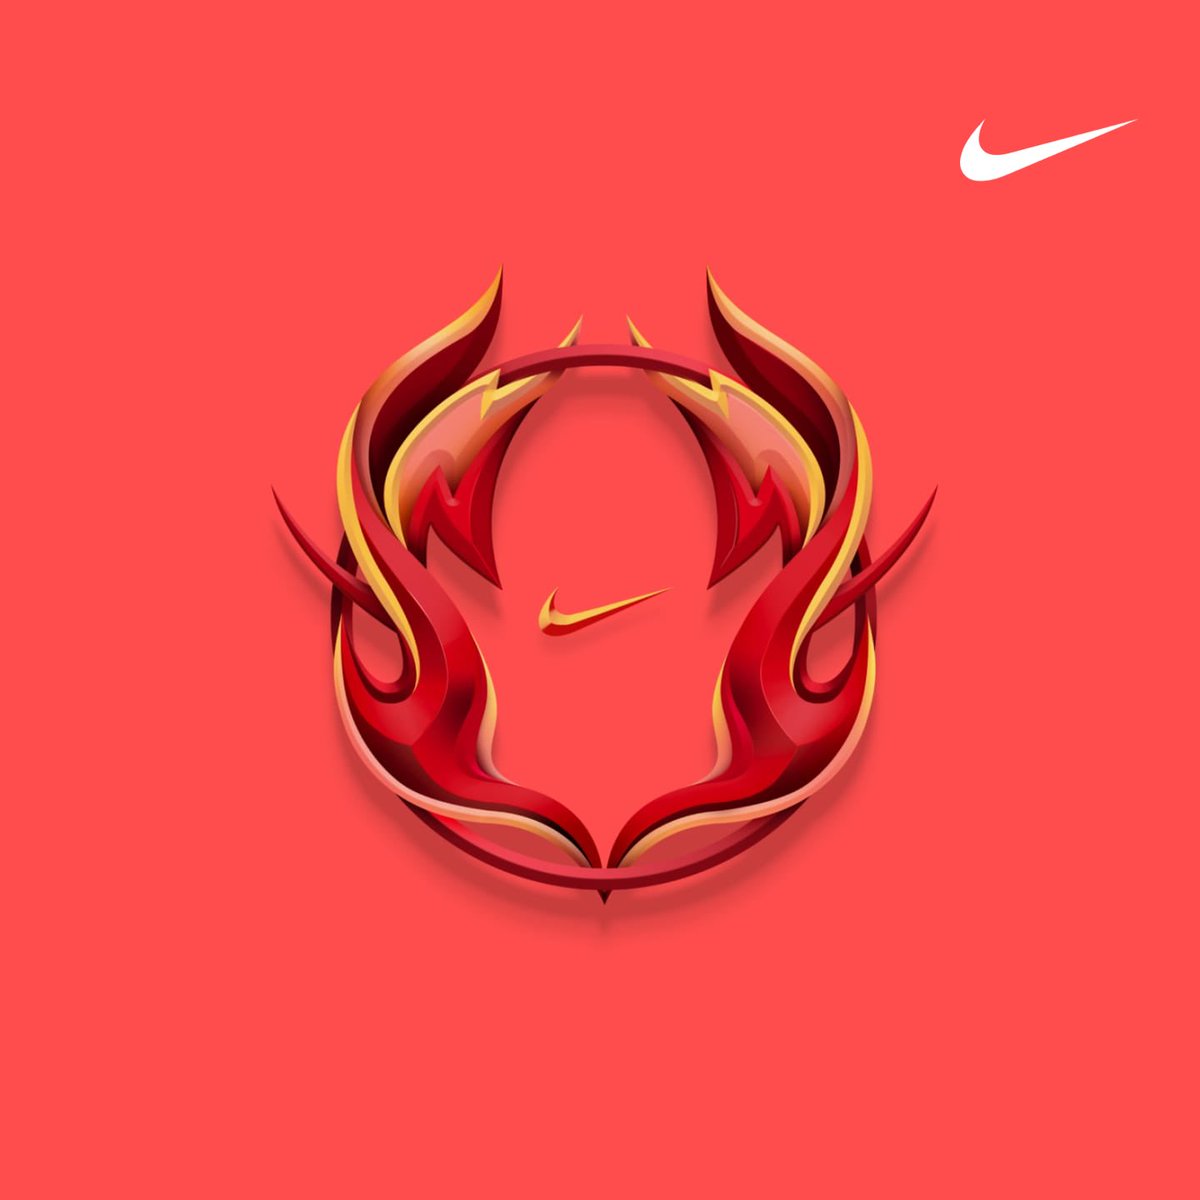 I finished the ignite and inspire program 🥵 #NikeTraining